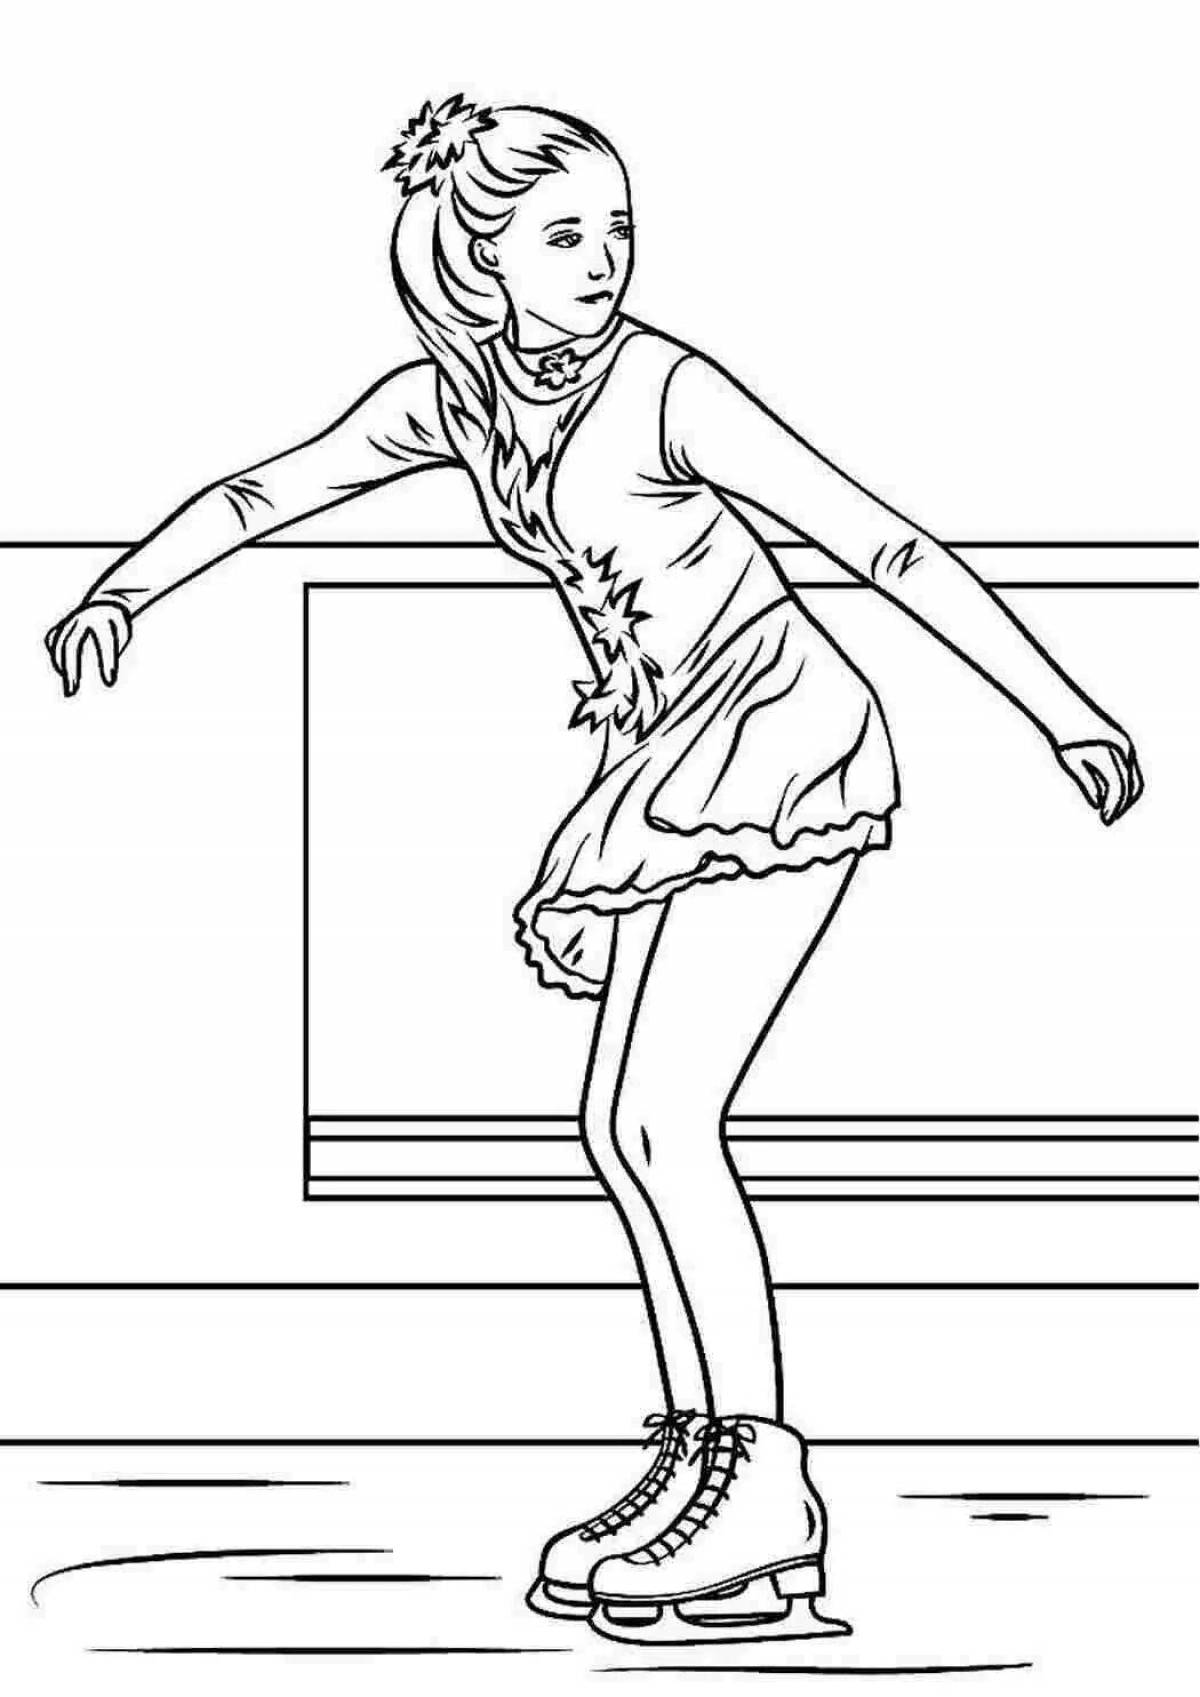 Fun coloring figure skater girl